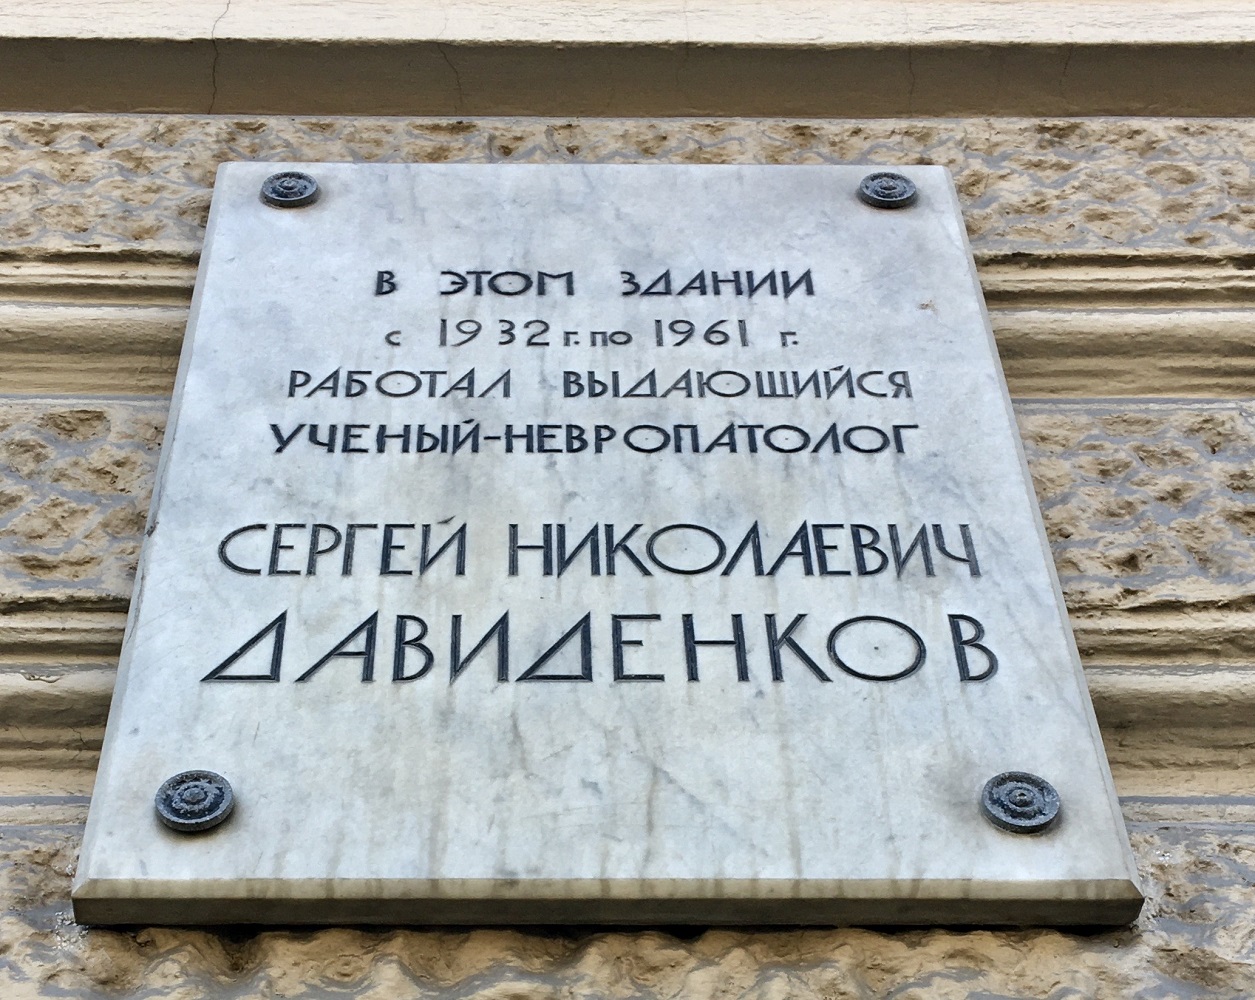 Saint Petersburg, Кирочная улица, 41 / Парадная улица, 2. Saint Petersburg — Memorial plaques